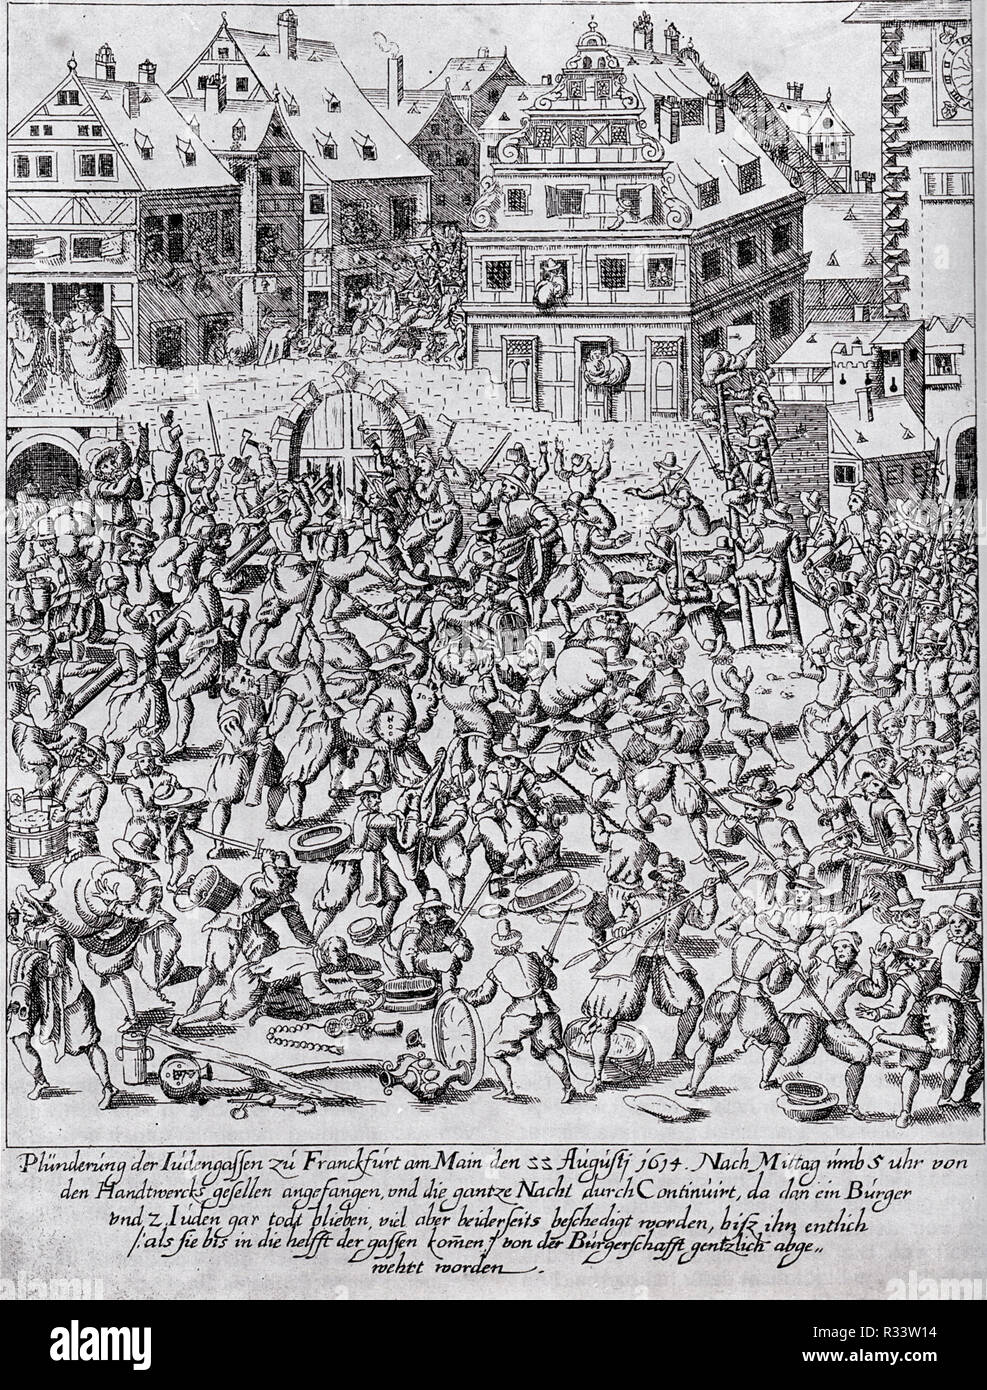 Fettmilch tumulto: El saqueo de la Judengasse (judío) en Frankfurt el 22 de agosto de 1614 Foto de stock